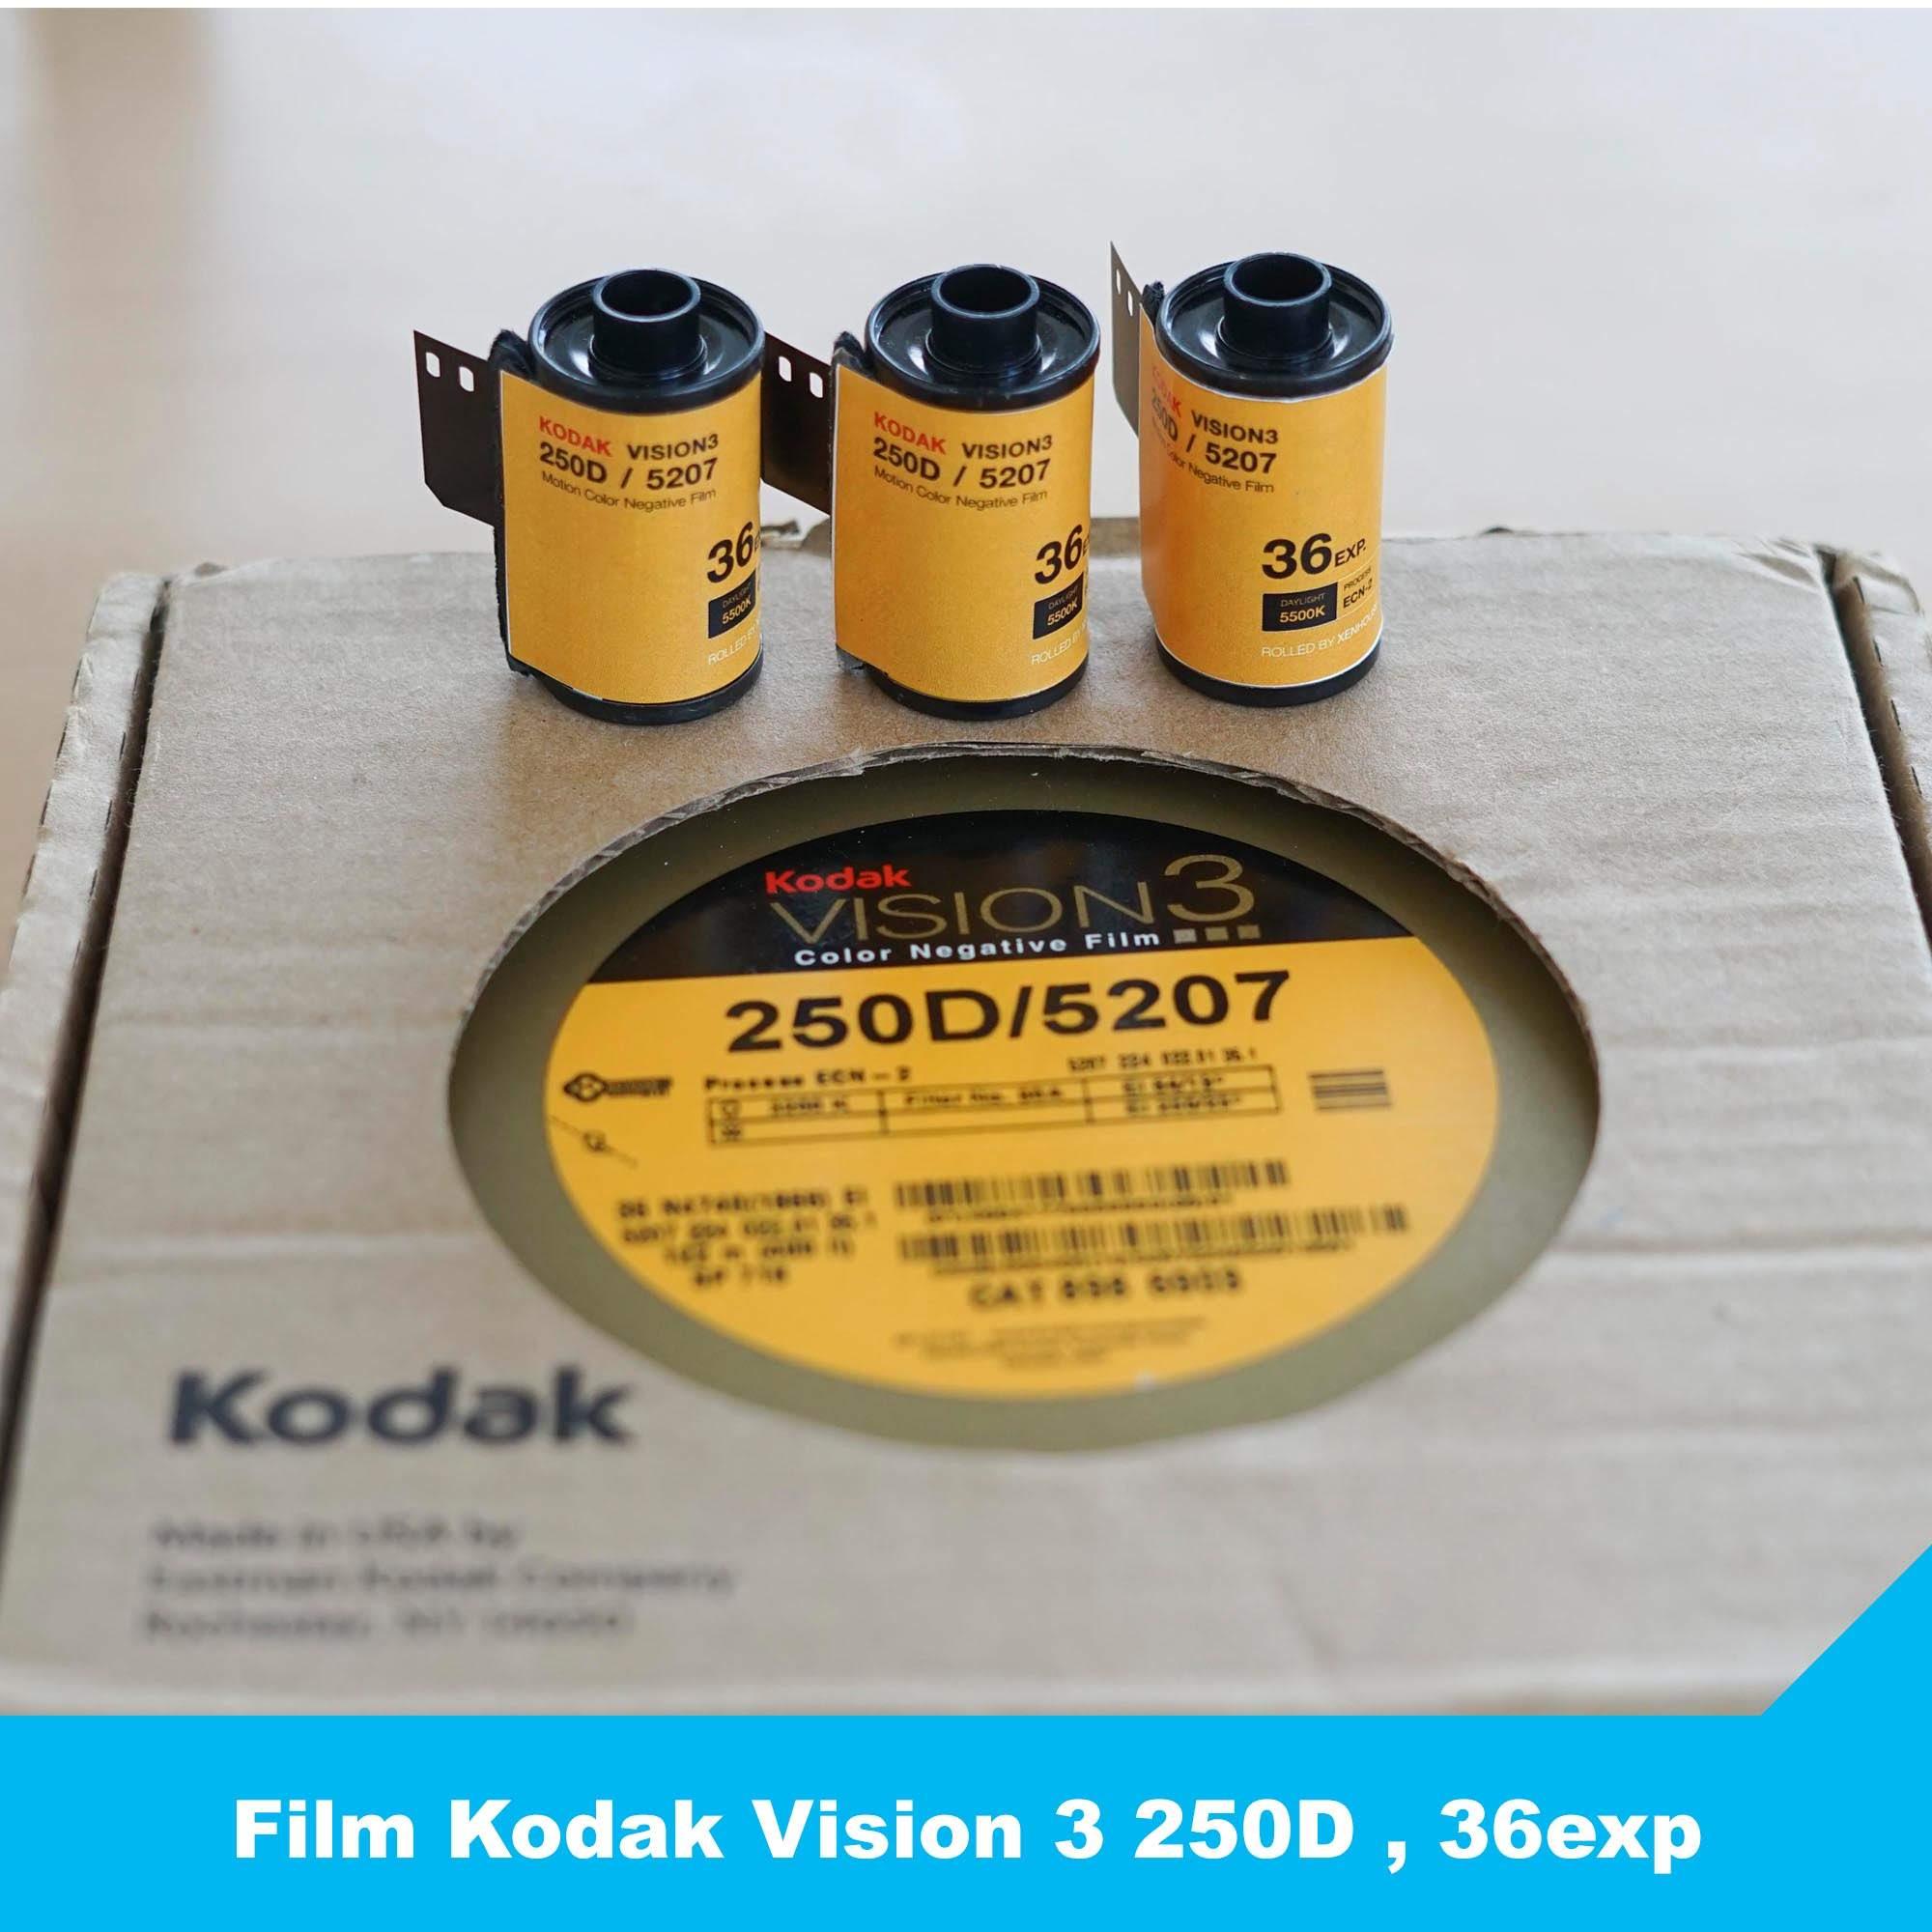 Film điện ảnh Kodak Vision 3 250D, 36exp - Phim chụp ảnh 35mm